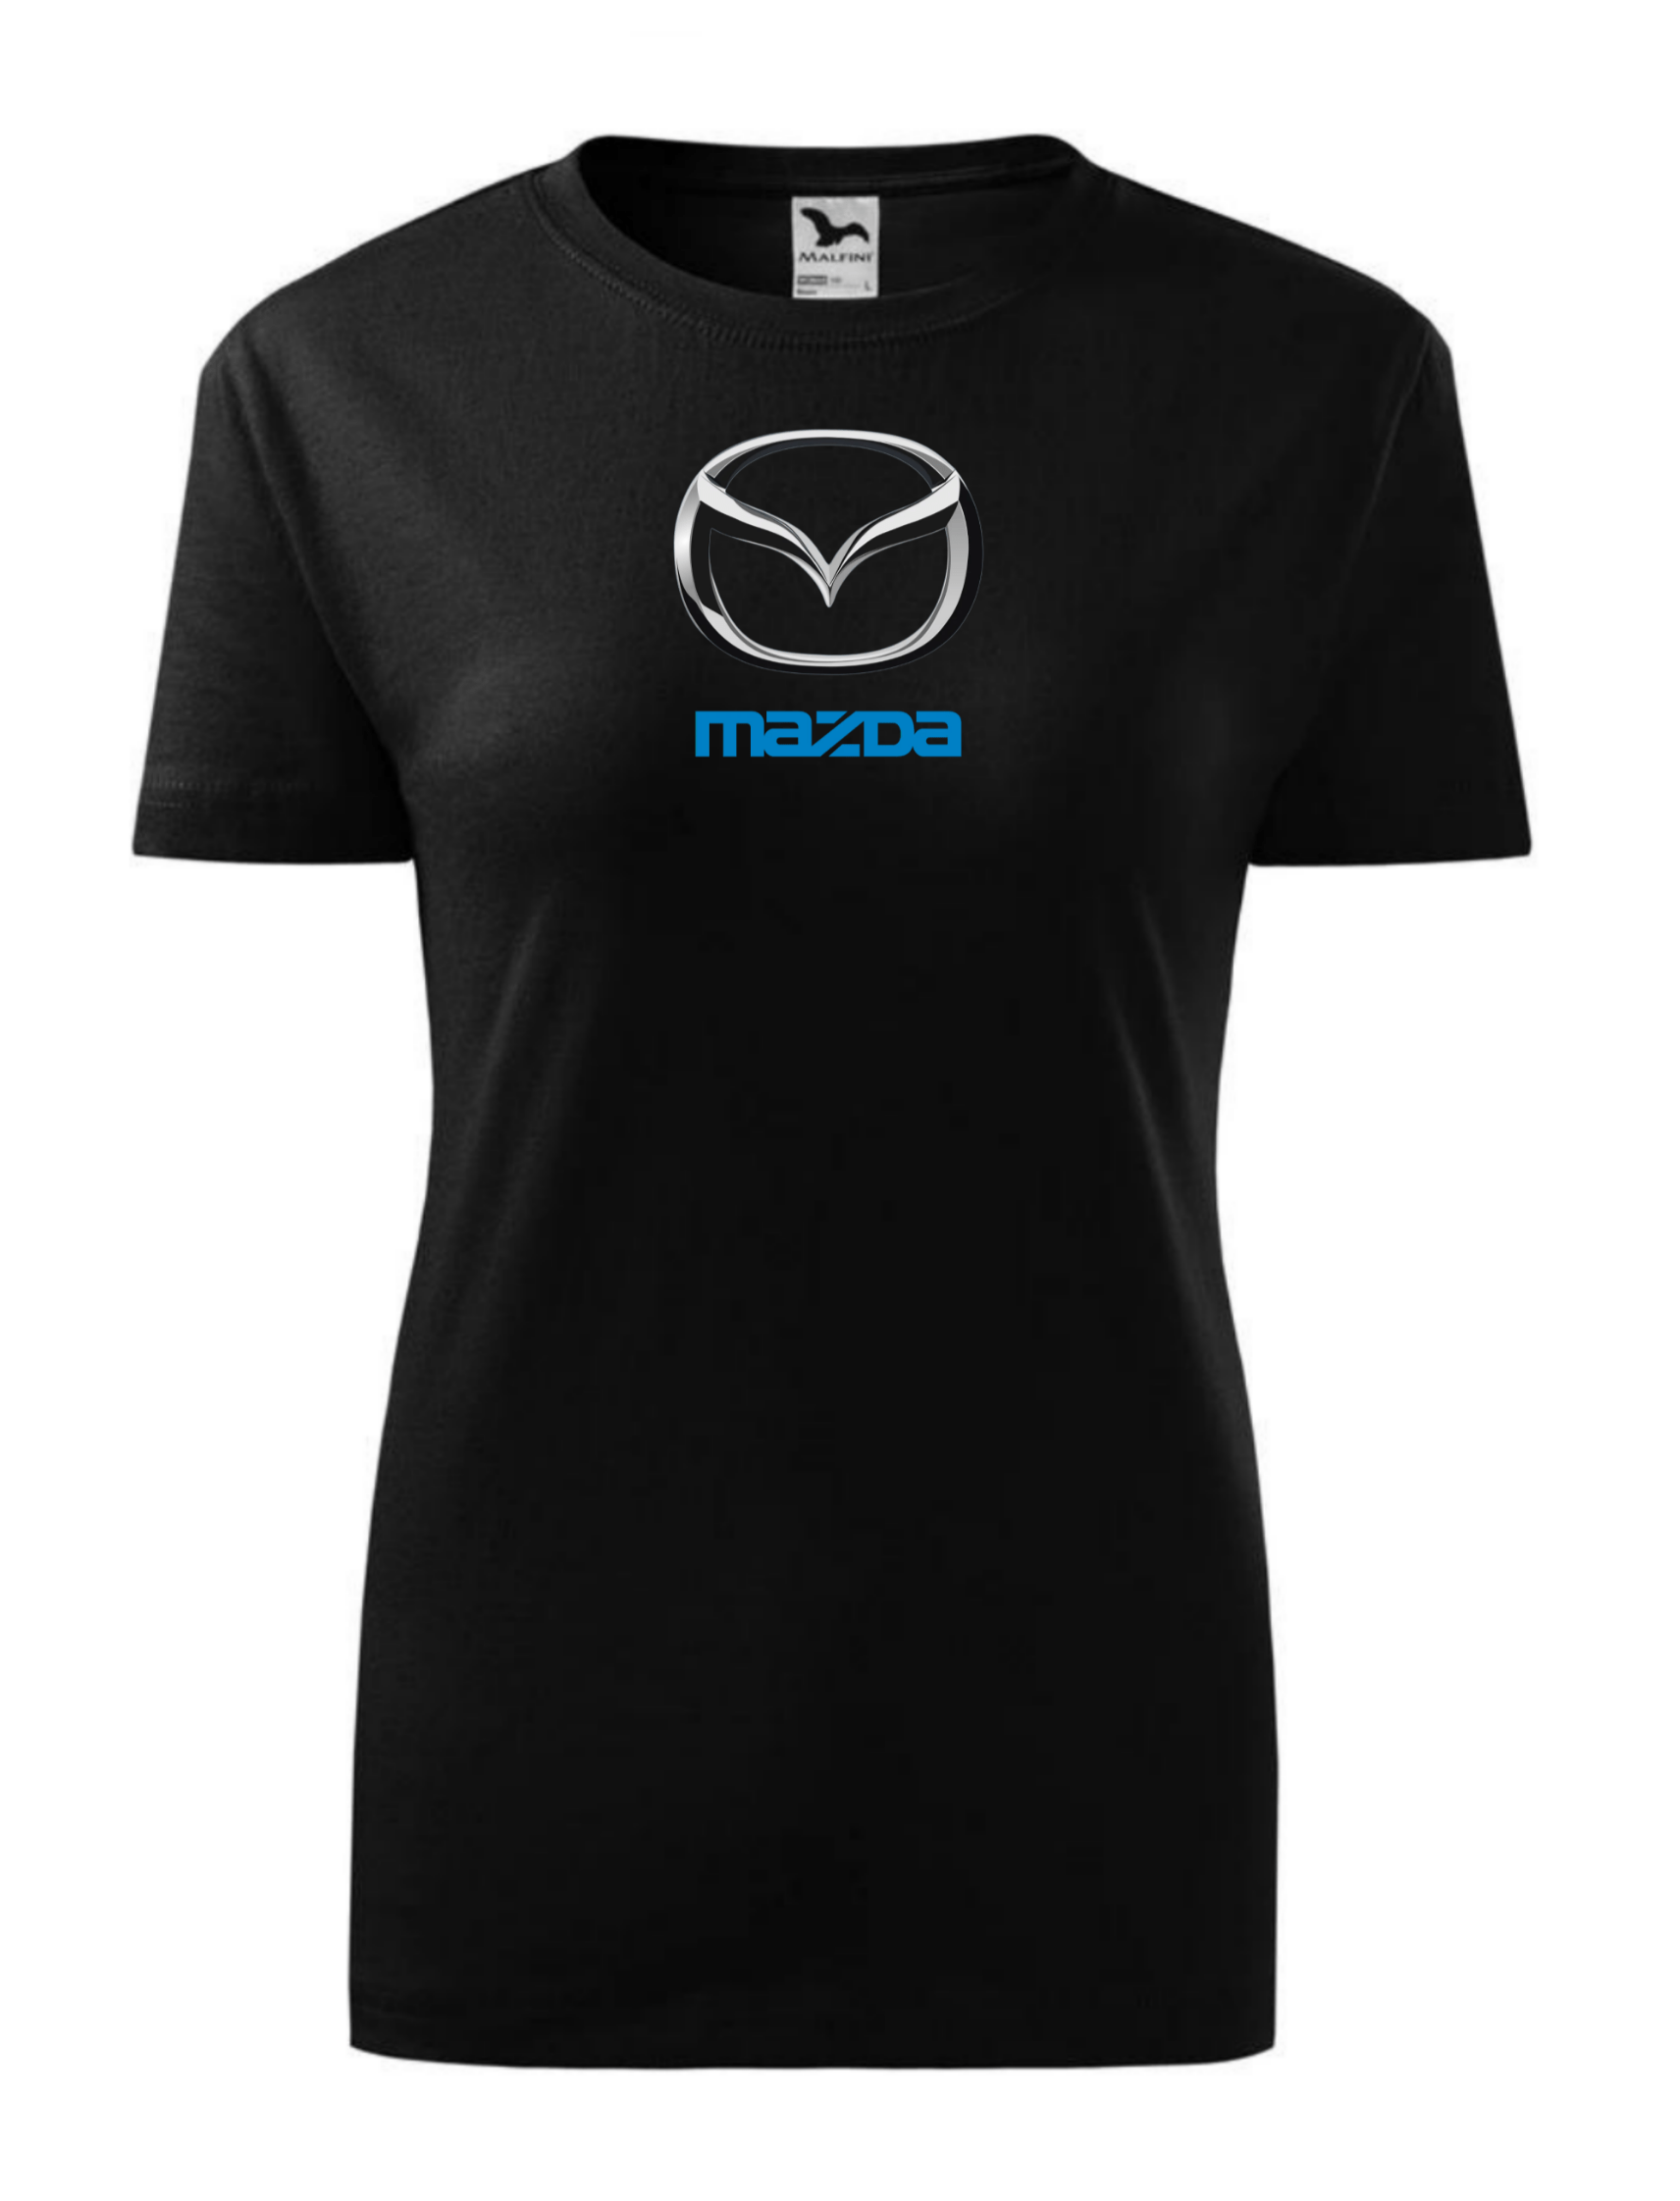 Dámské tričko s potiskem značky Mazda